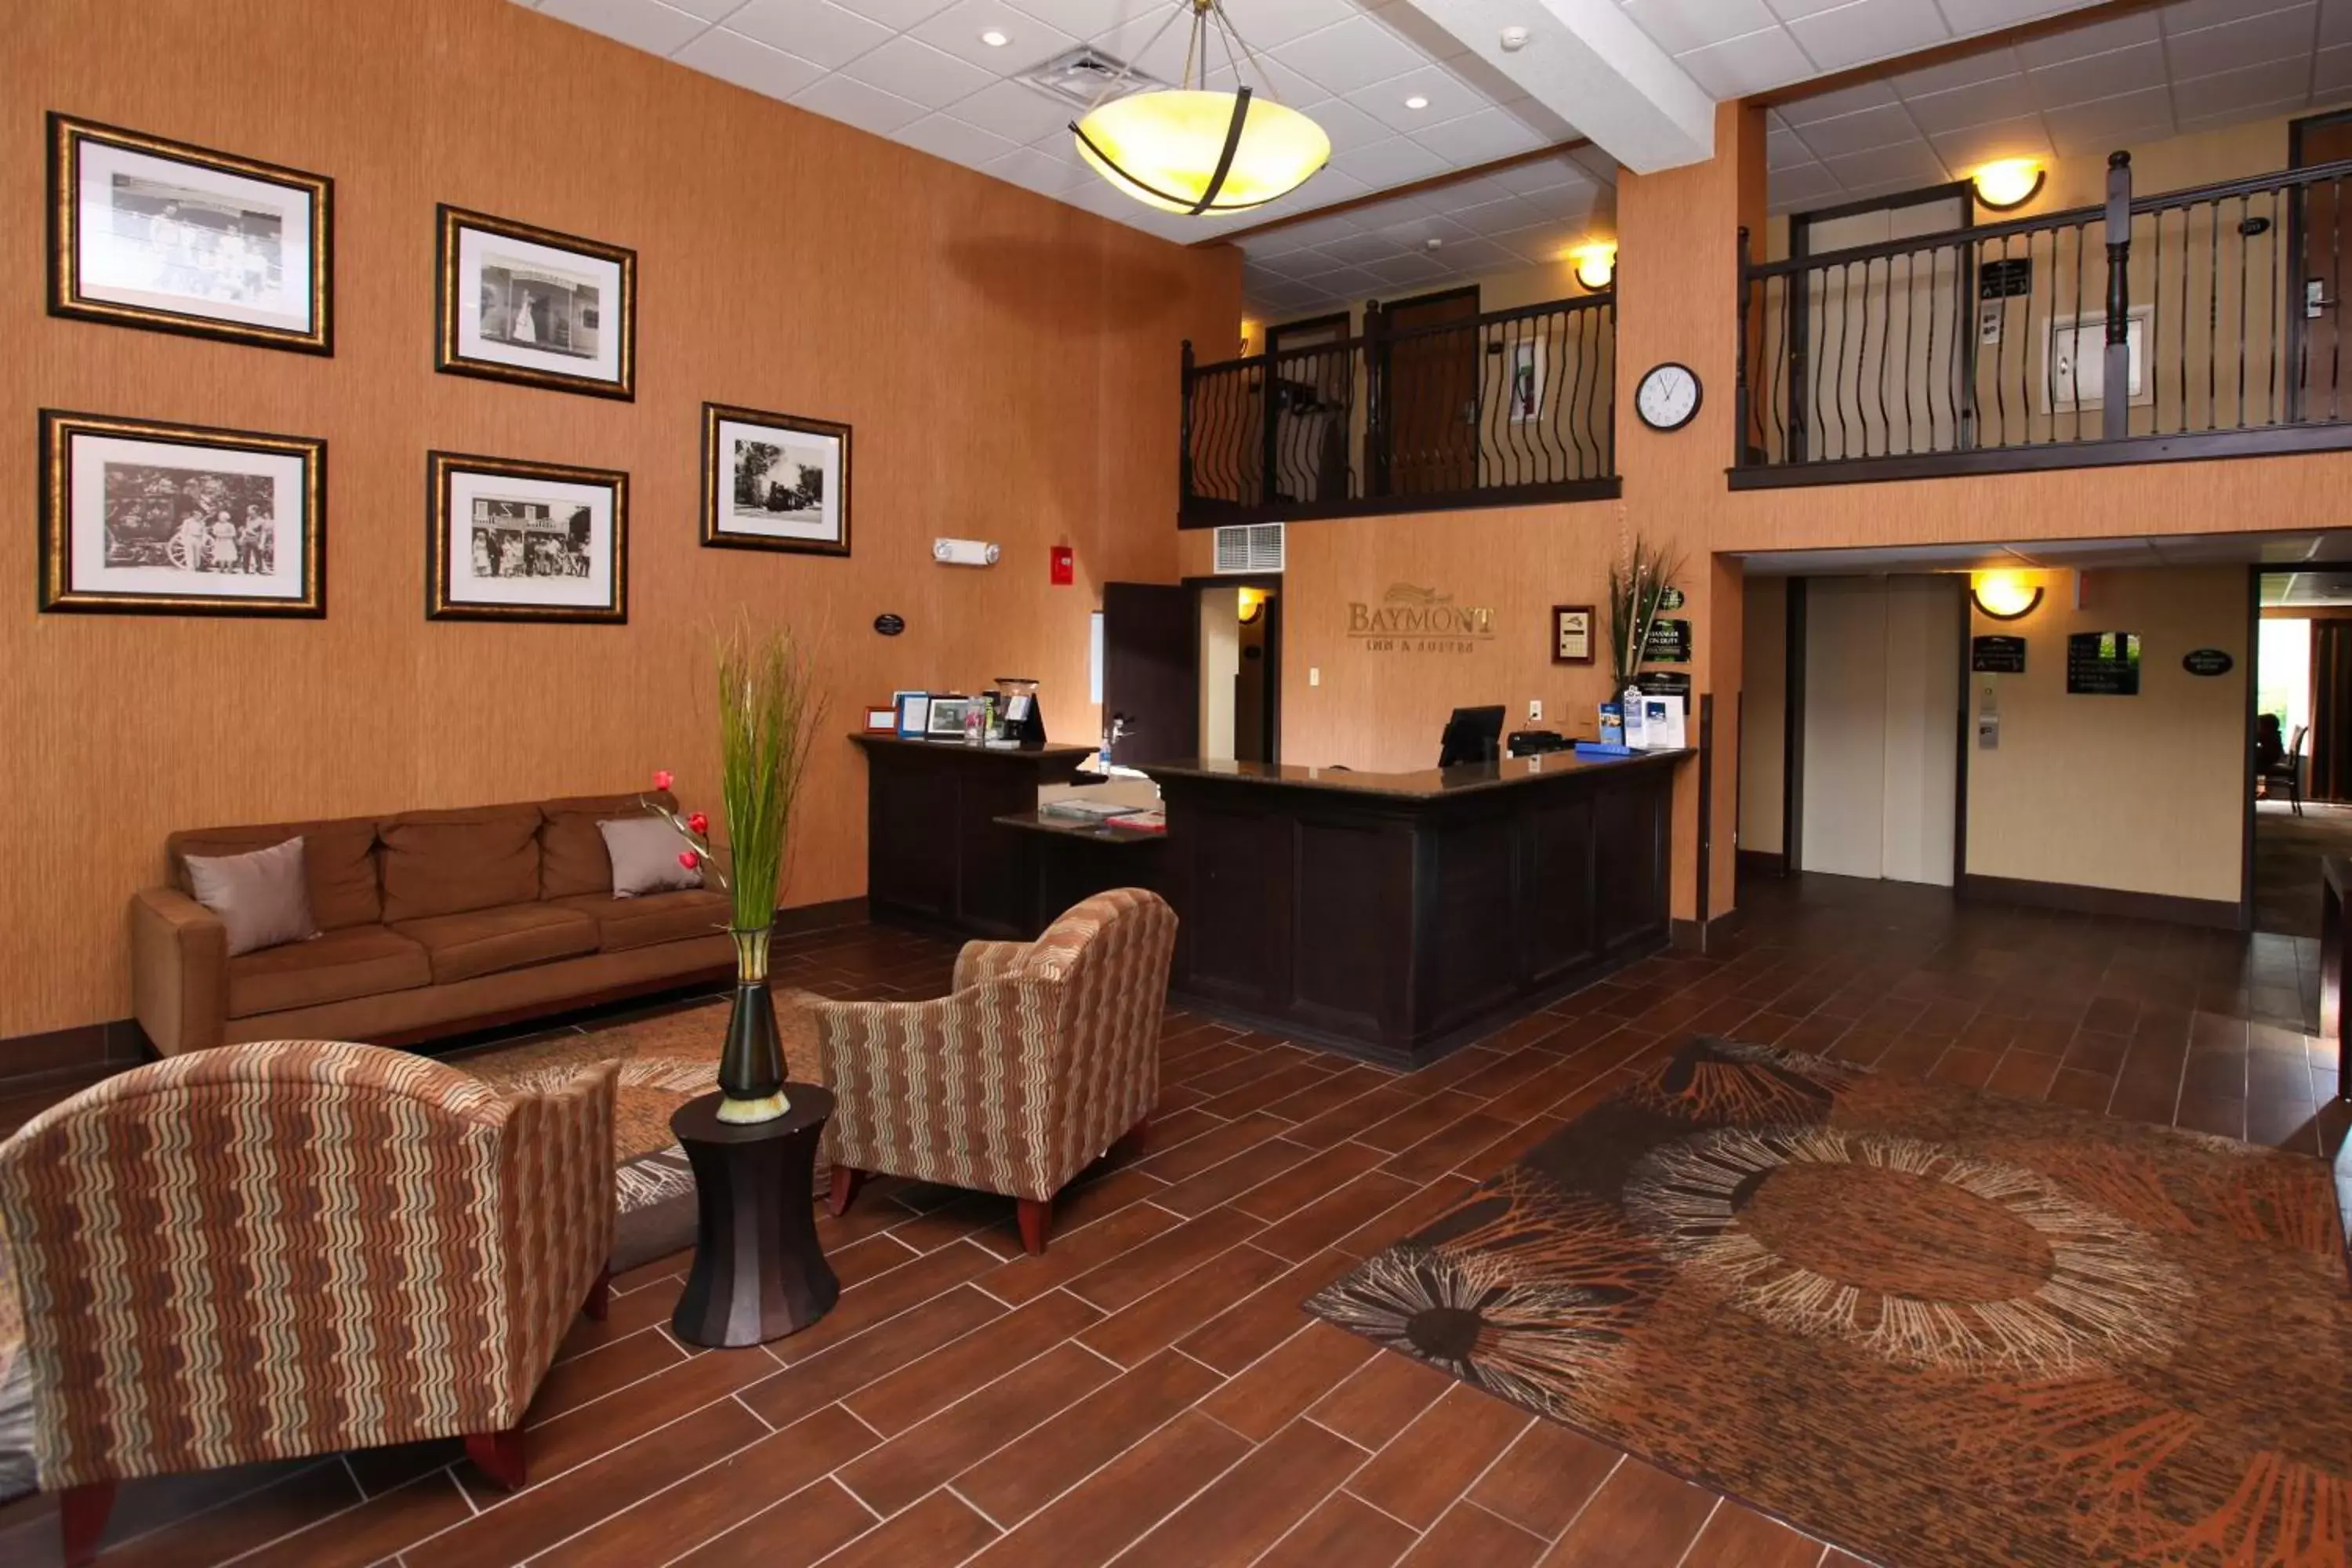 Lobby or reception, Lobby/Reception in Baymont by Wyndham Branson - On the Strip